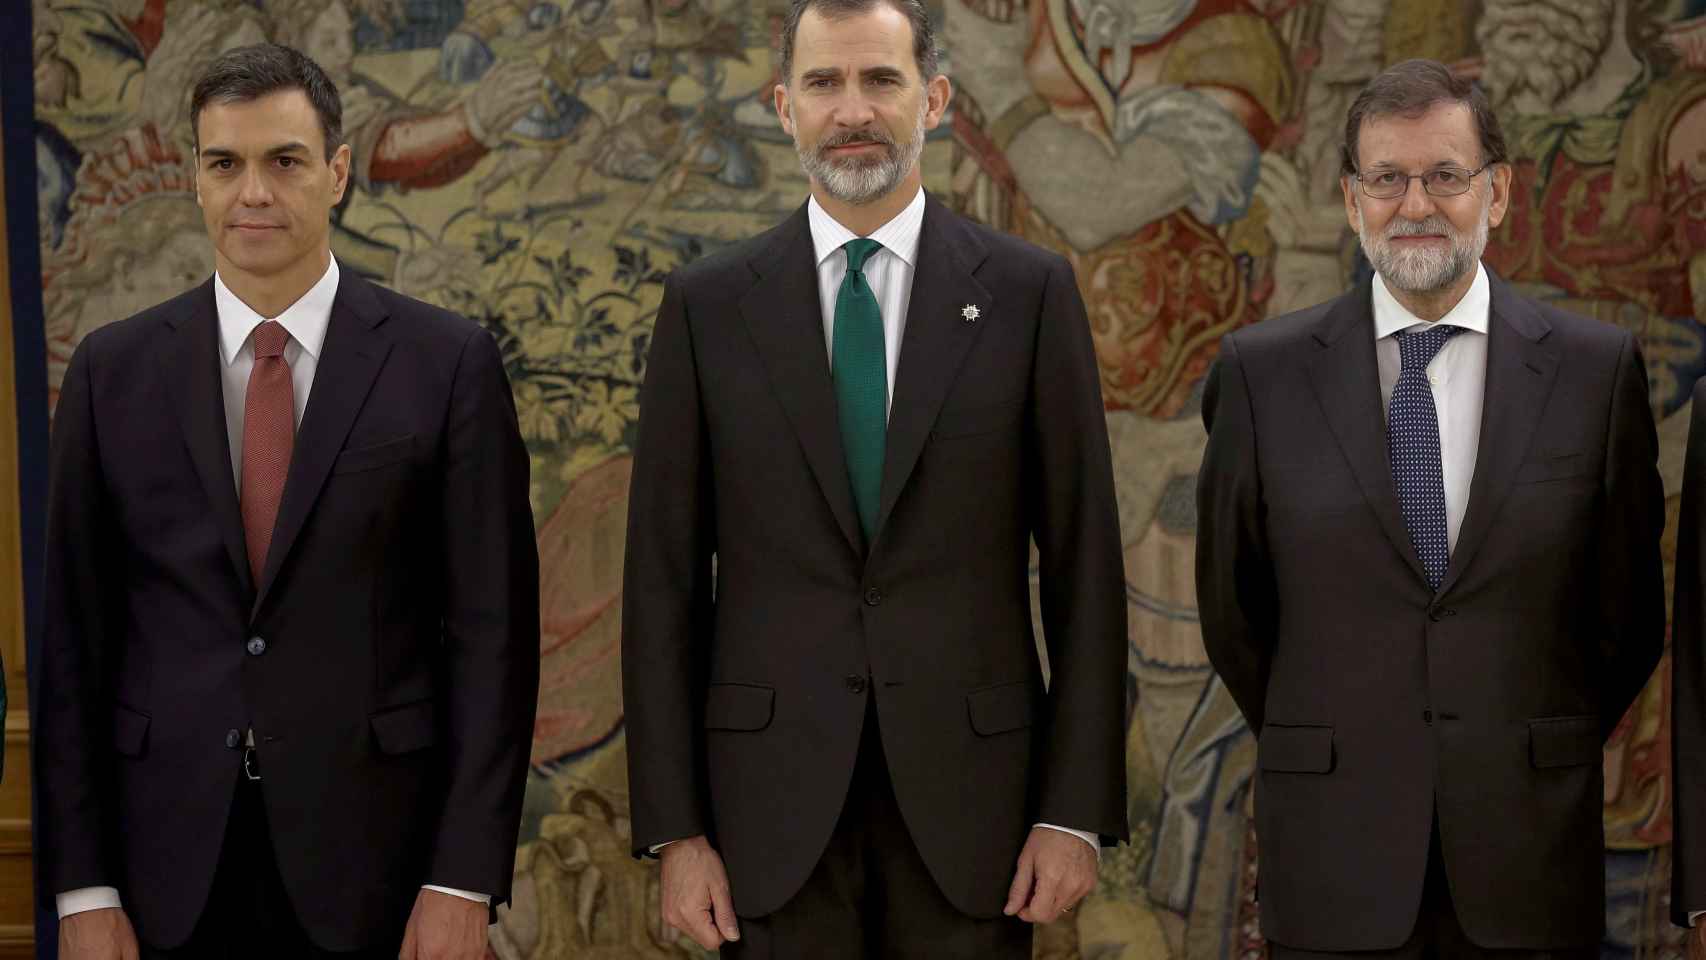 El Rey Felipe VI posa con Pedro Sánchez y Mariano Rajoy en la toma de posesión del nuevo presidente.